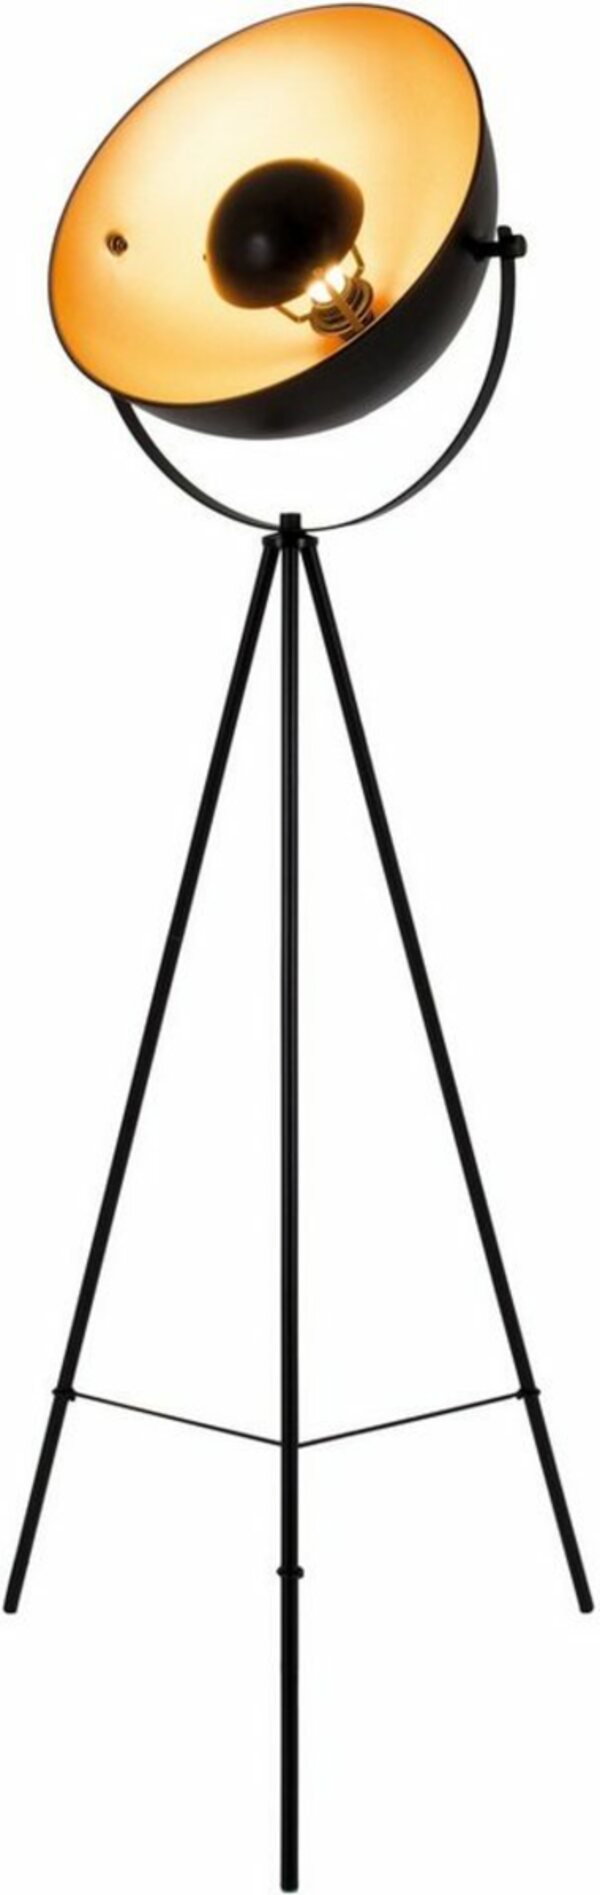 Bild 1 von Näve Stehlampe Bernice, ohne Leuchtmittel, Retro Style, Standfestes Dreibein, Reflektor: goldfarben, Goldfarben|schwarz